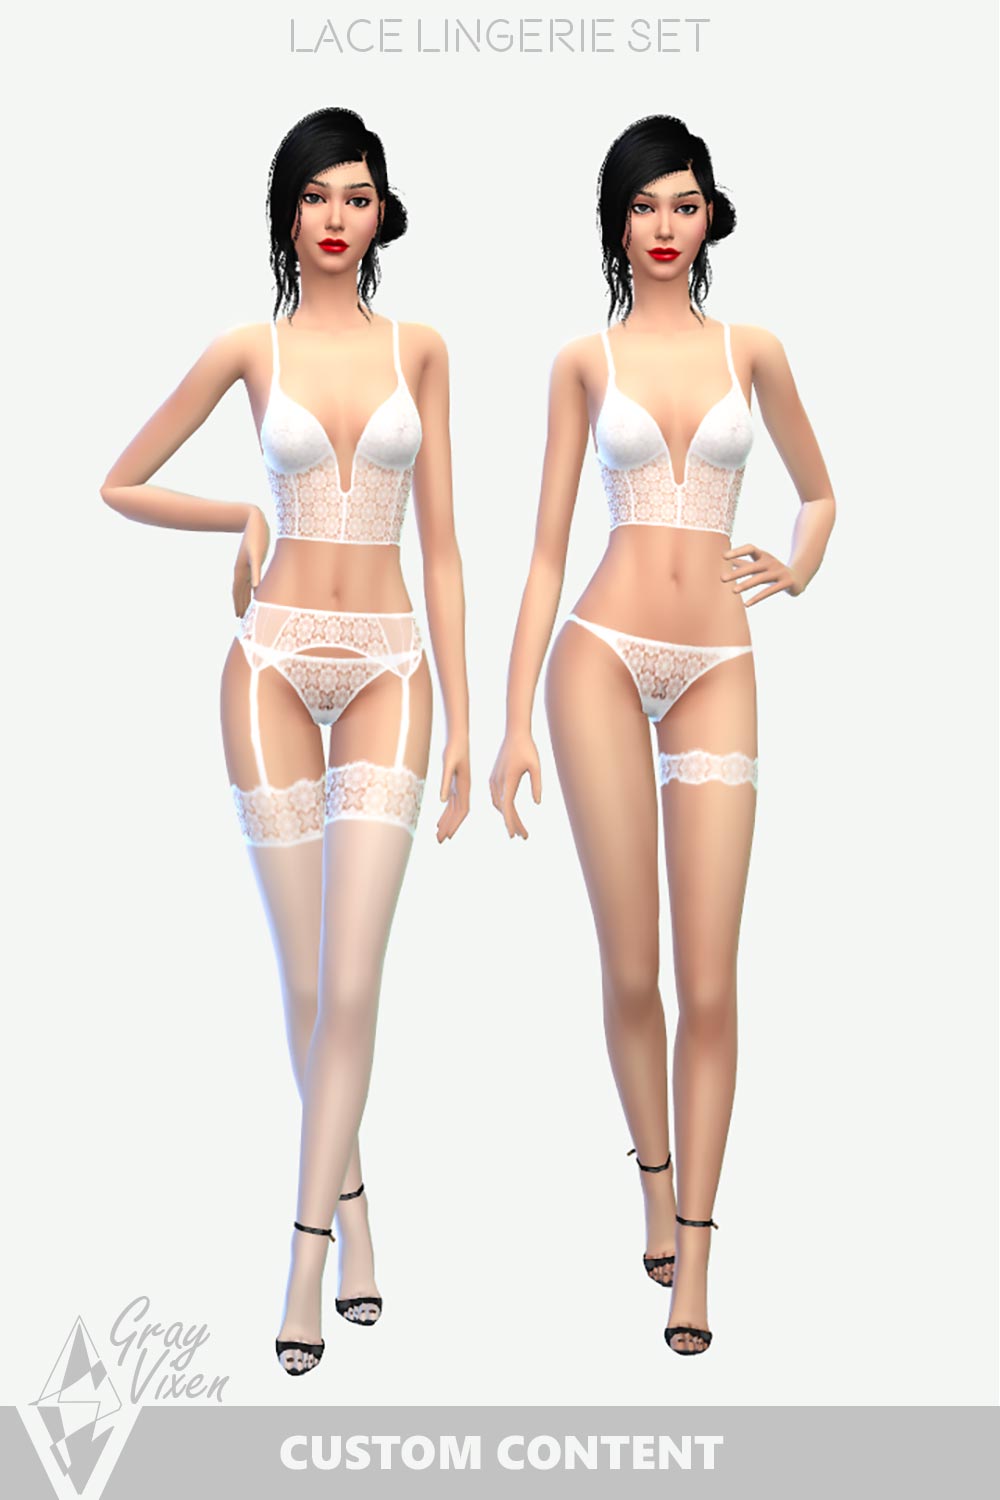 The Sims Lingerie CC - The 4 Lace Lingerie Set